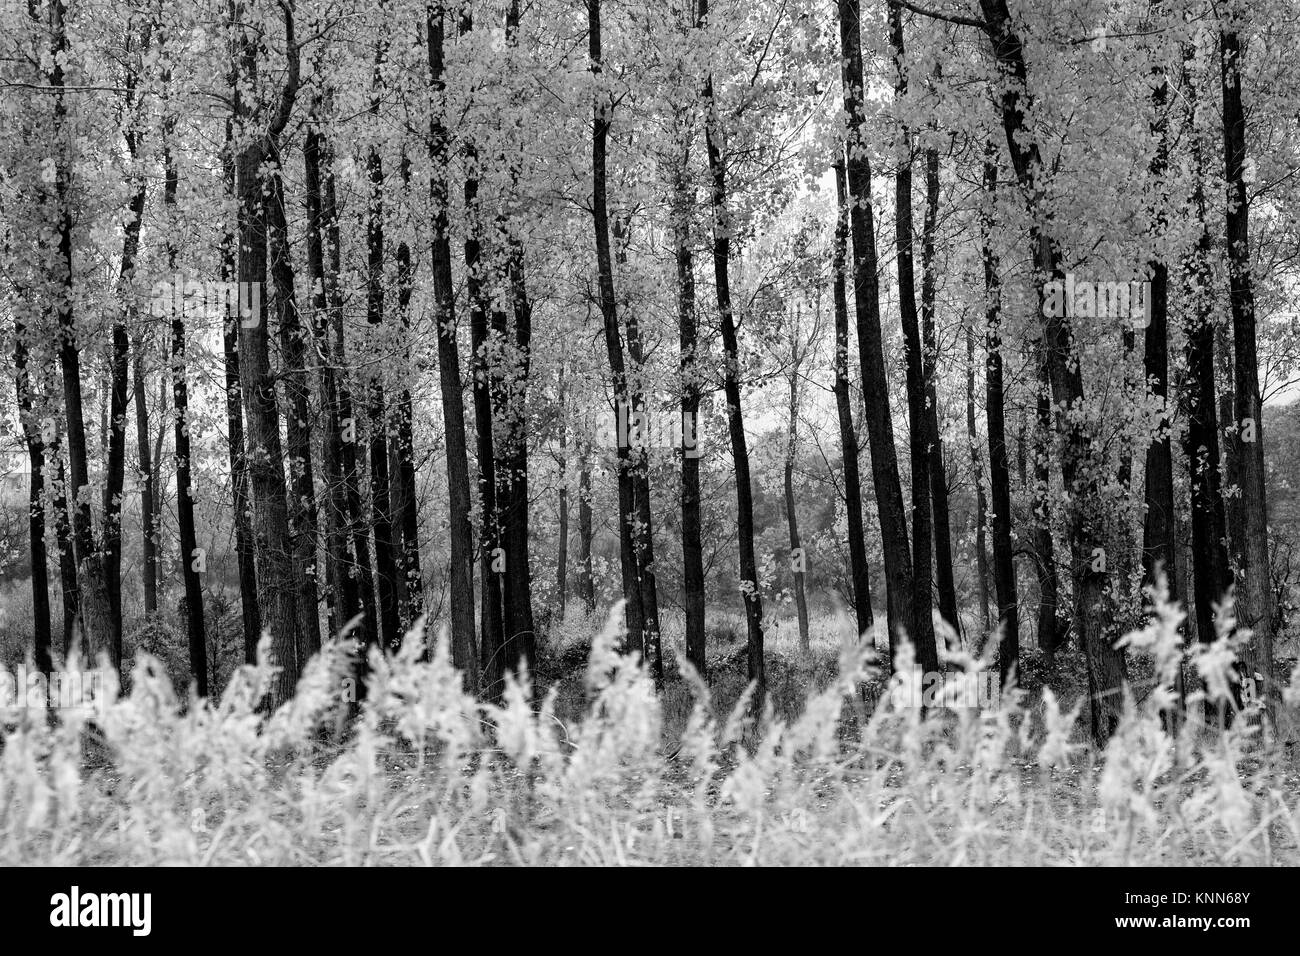 Hintergrund der schwarzen und weißen Wald mit vielen geraden Bäumen im Vordergrund Stockfoto